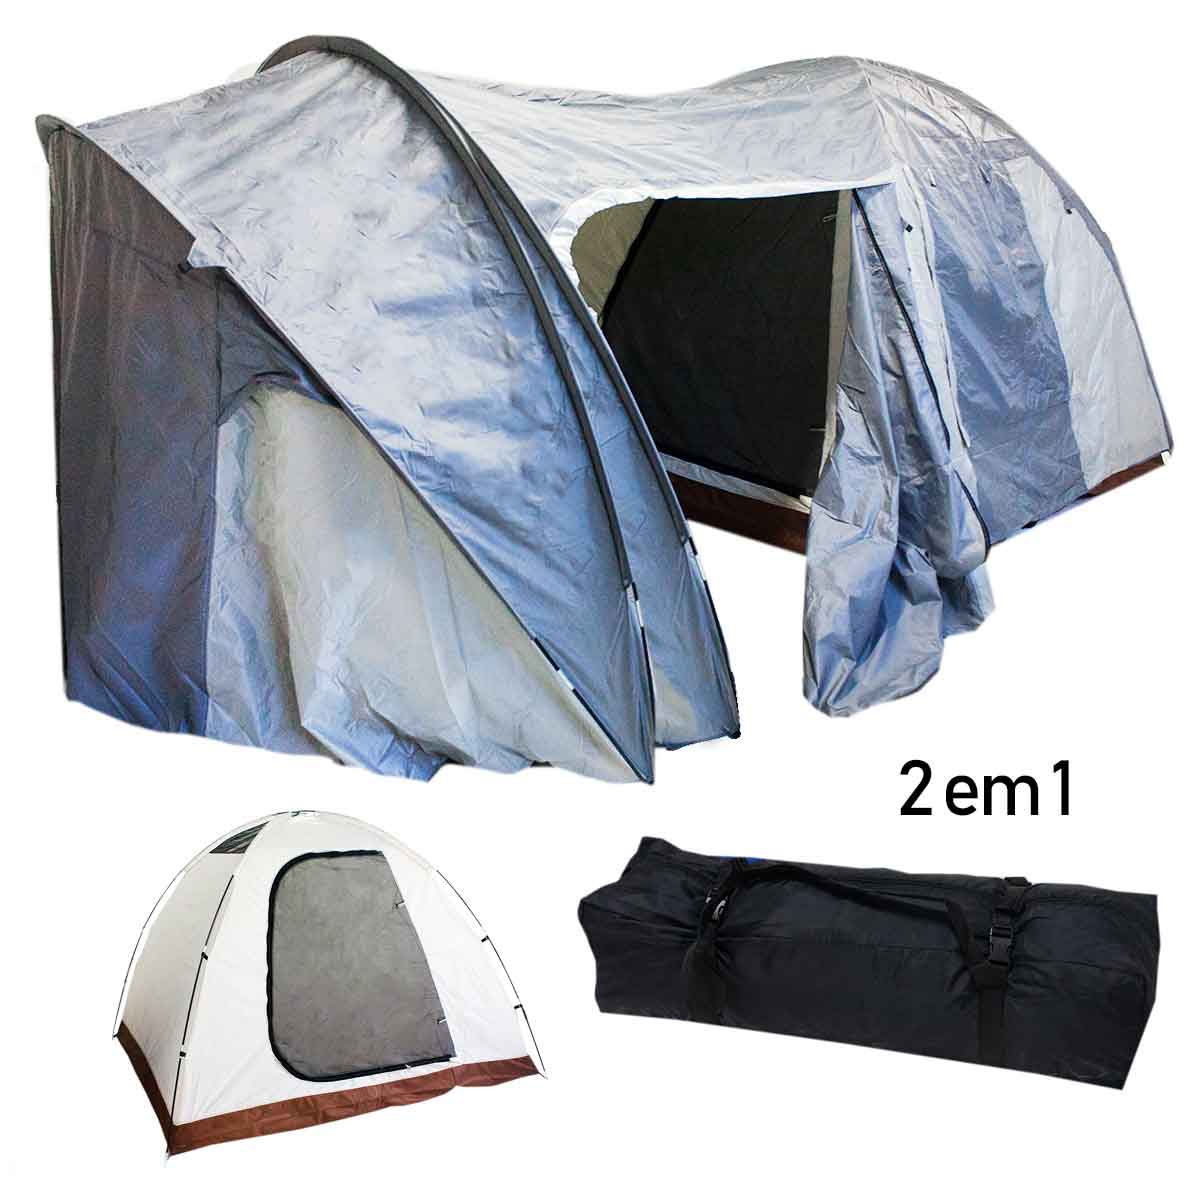 Barraca Camping 6 Pessoas Iglu Tenda Bolsa Acampamento 240cm